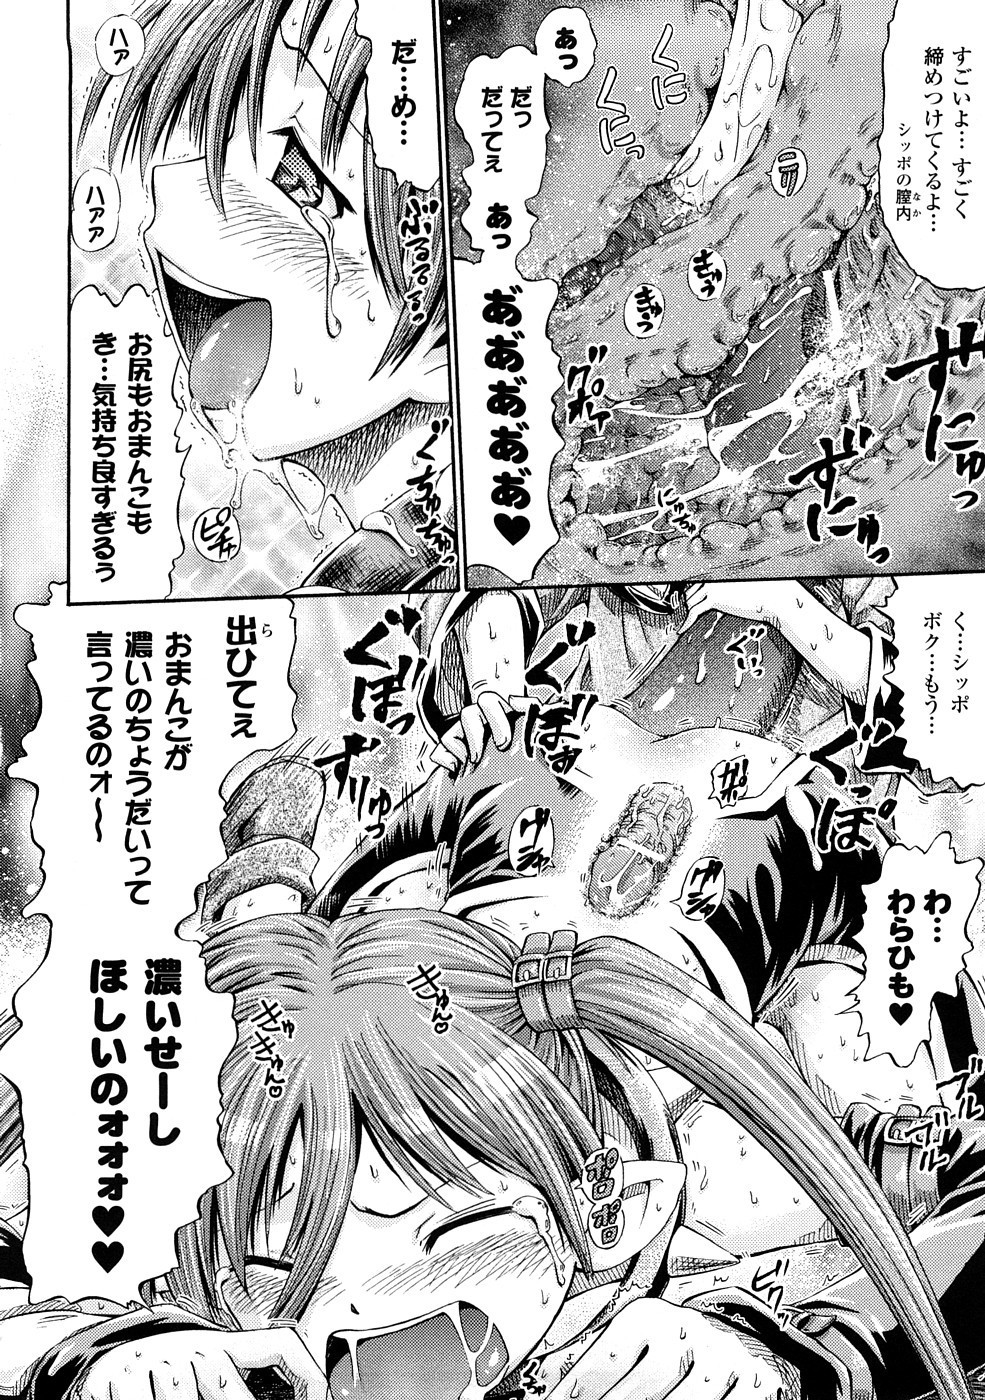 [Horitomo] Fairy Tales page 43 full